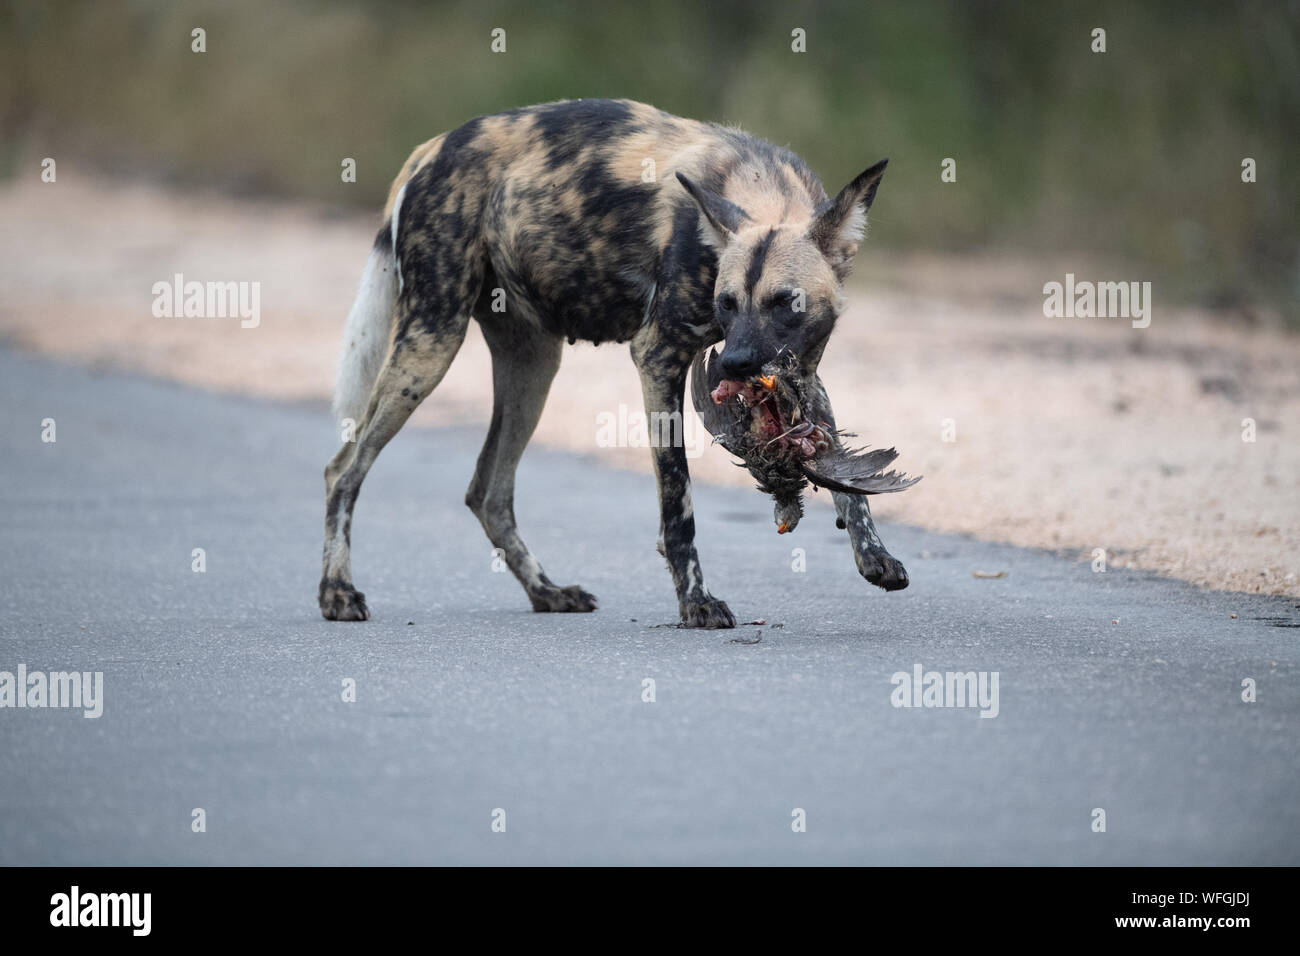 Perro salvaje africano (Lycaon pictus) llevando una francolin en su boca, Sudáfrica Foto de stock